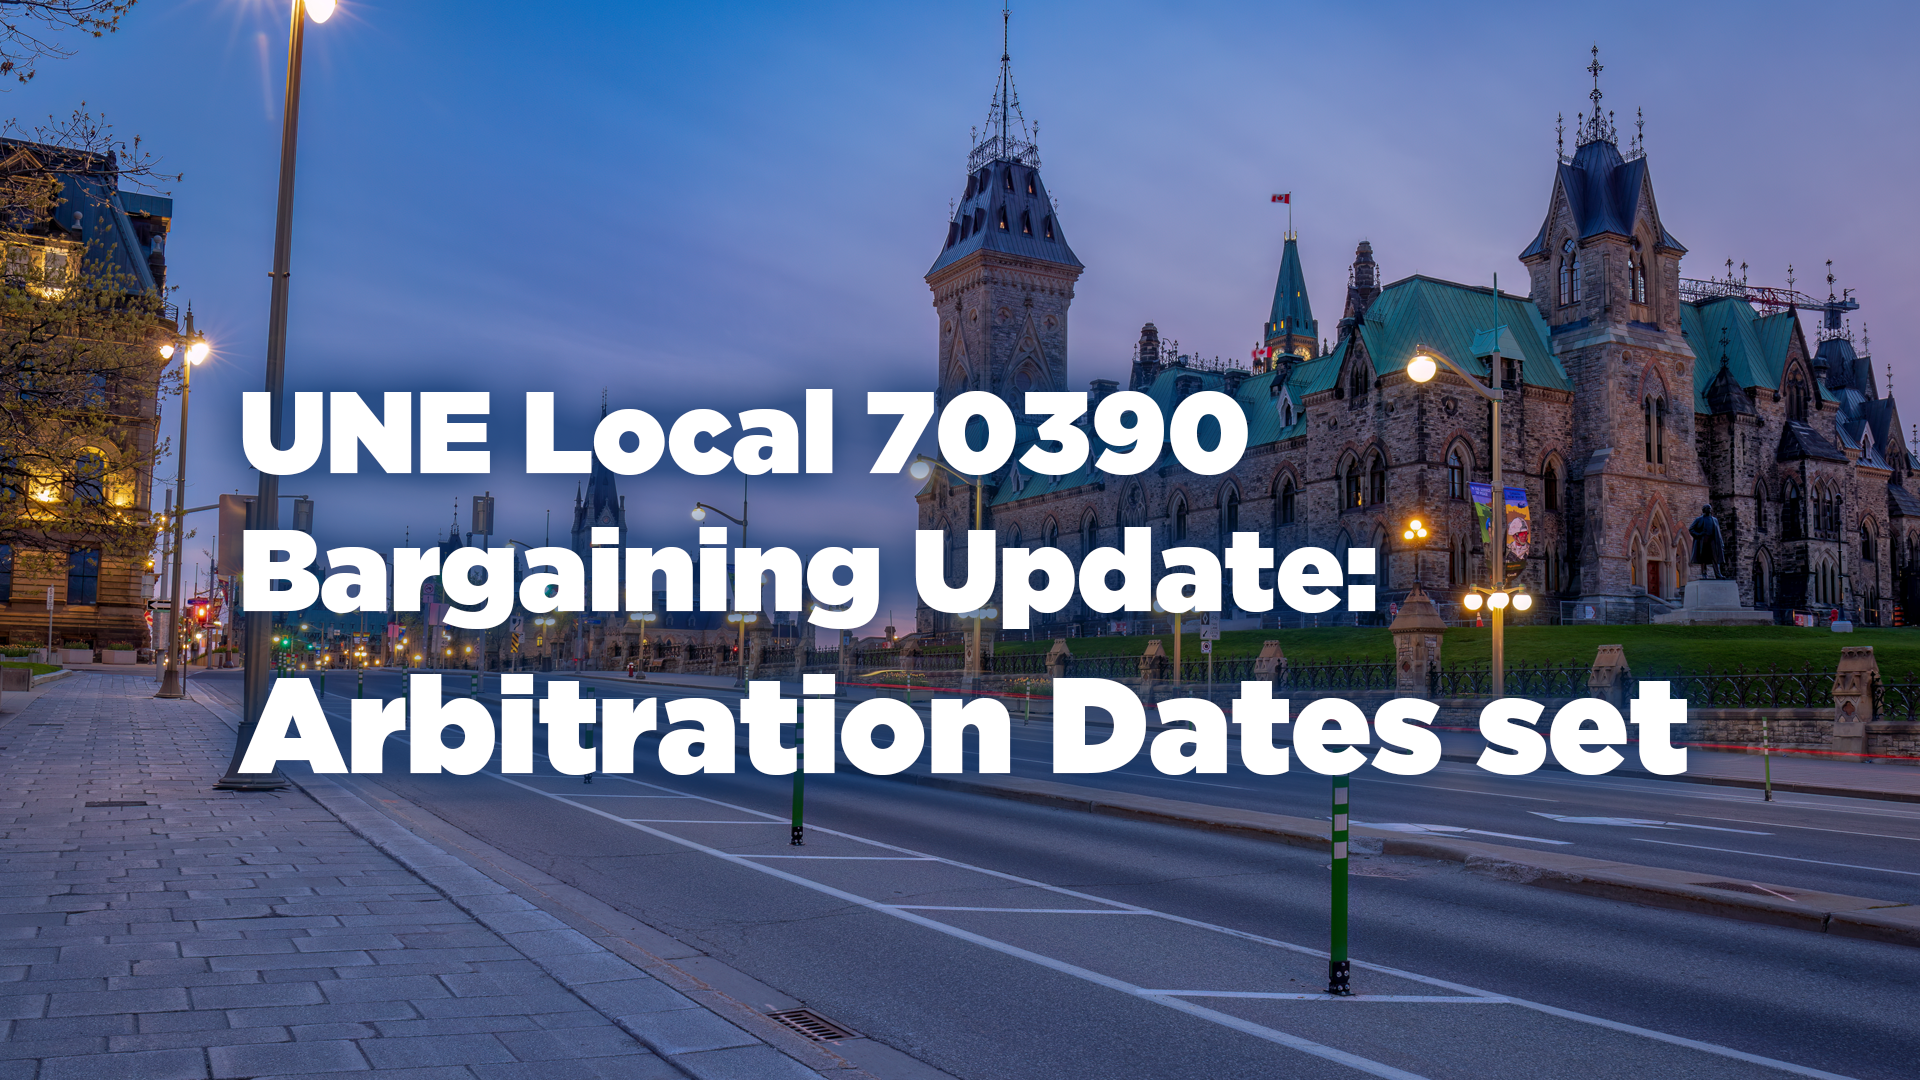 UNE Local 70390 Bargaining Update: Arbitration Dates set